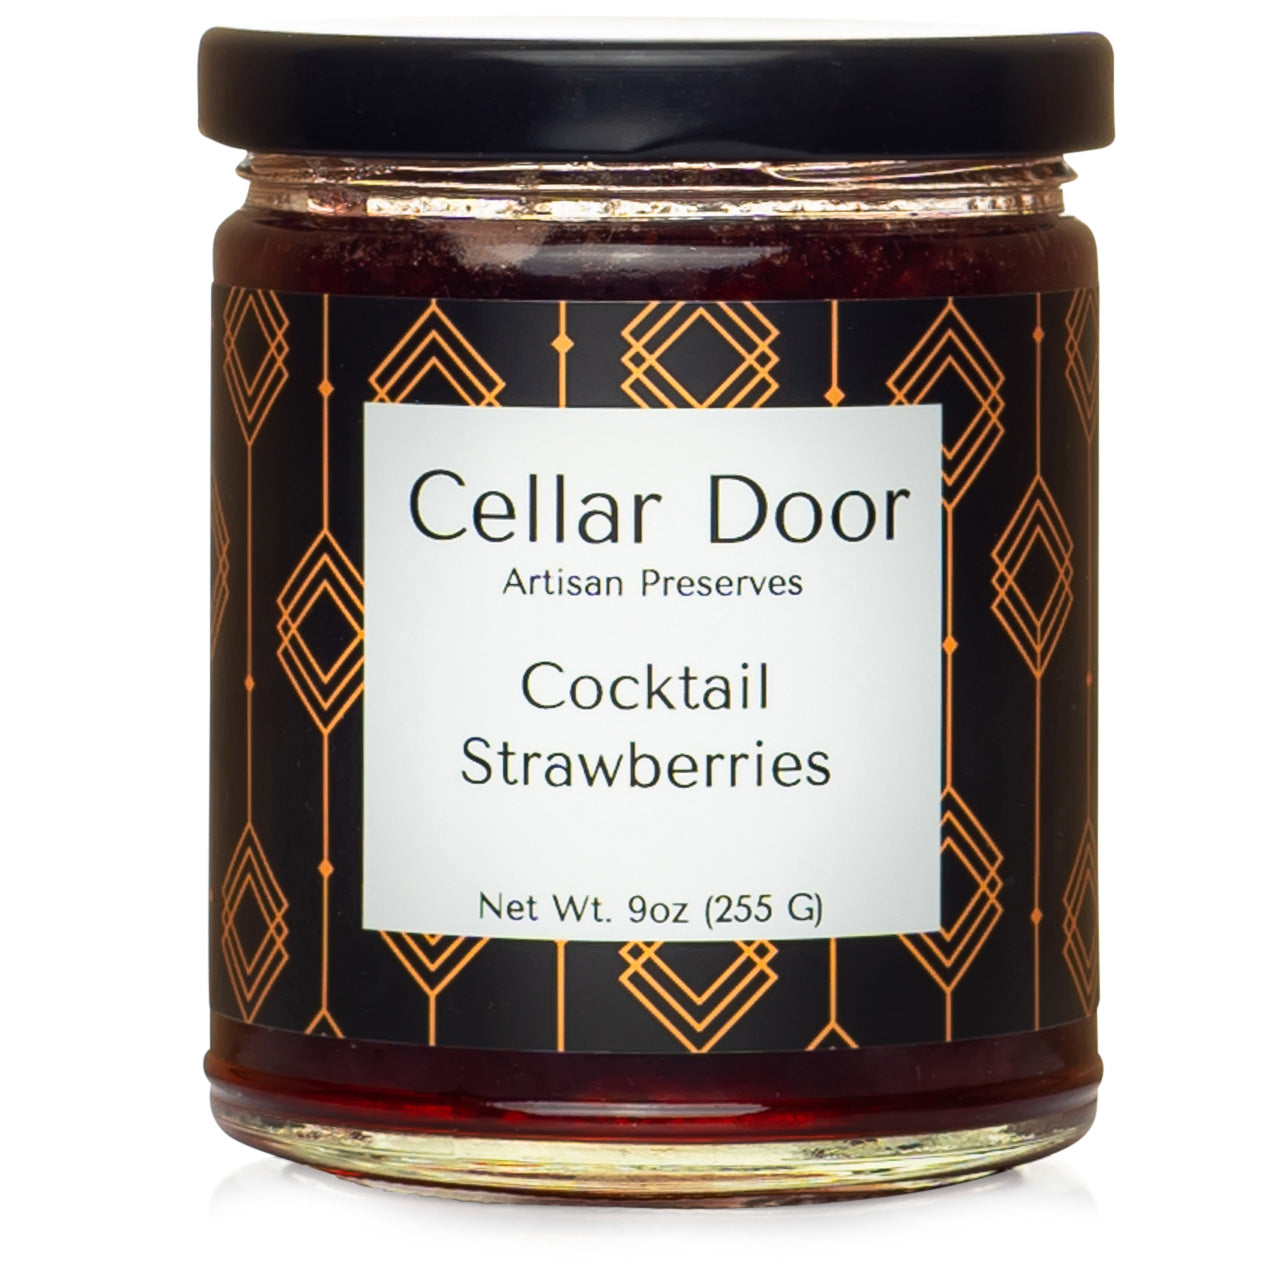 Cellar Door Cocktail Strawberries